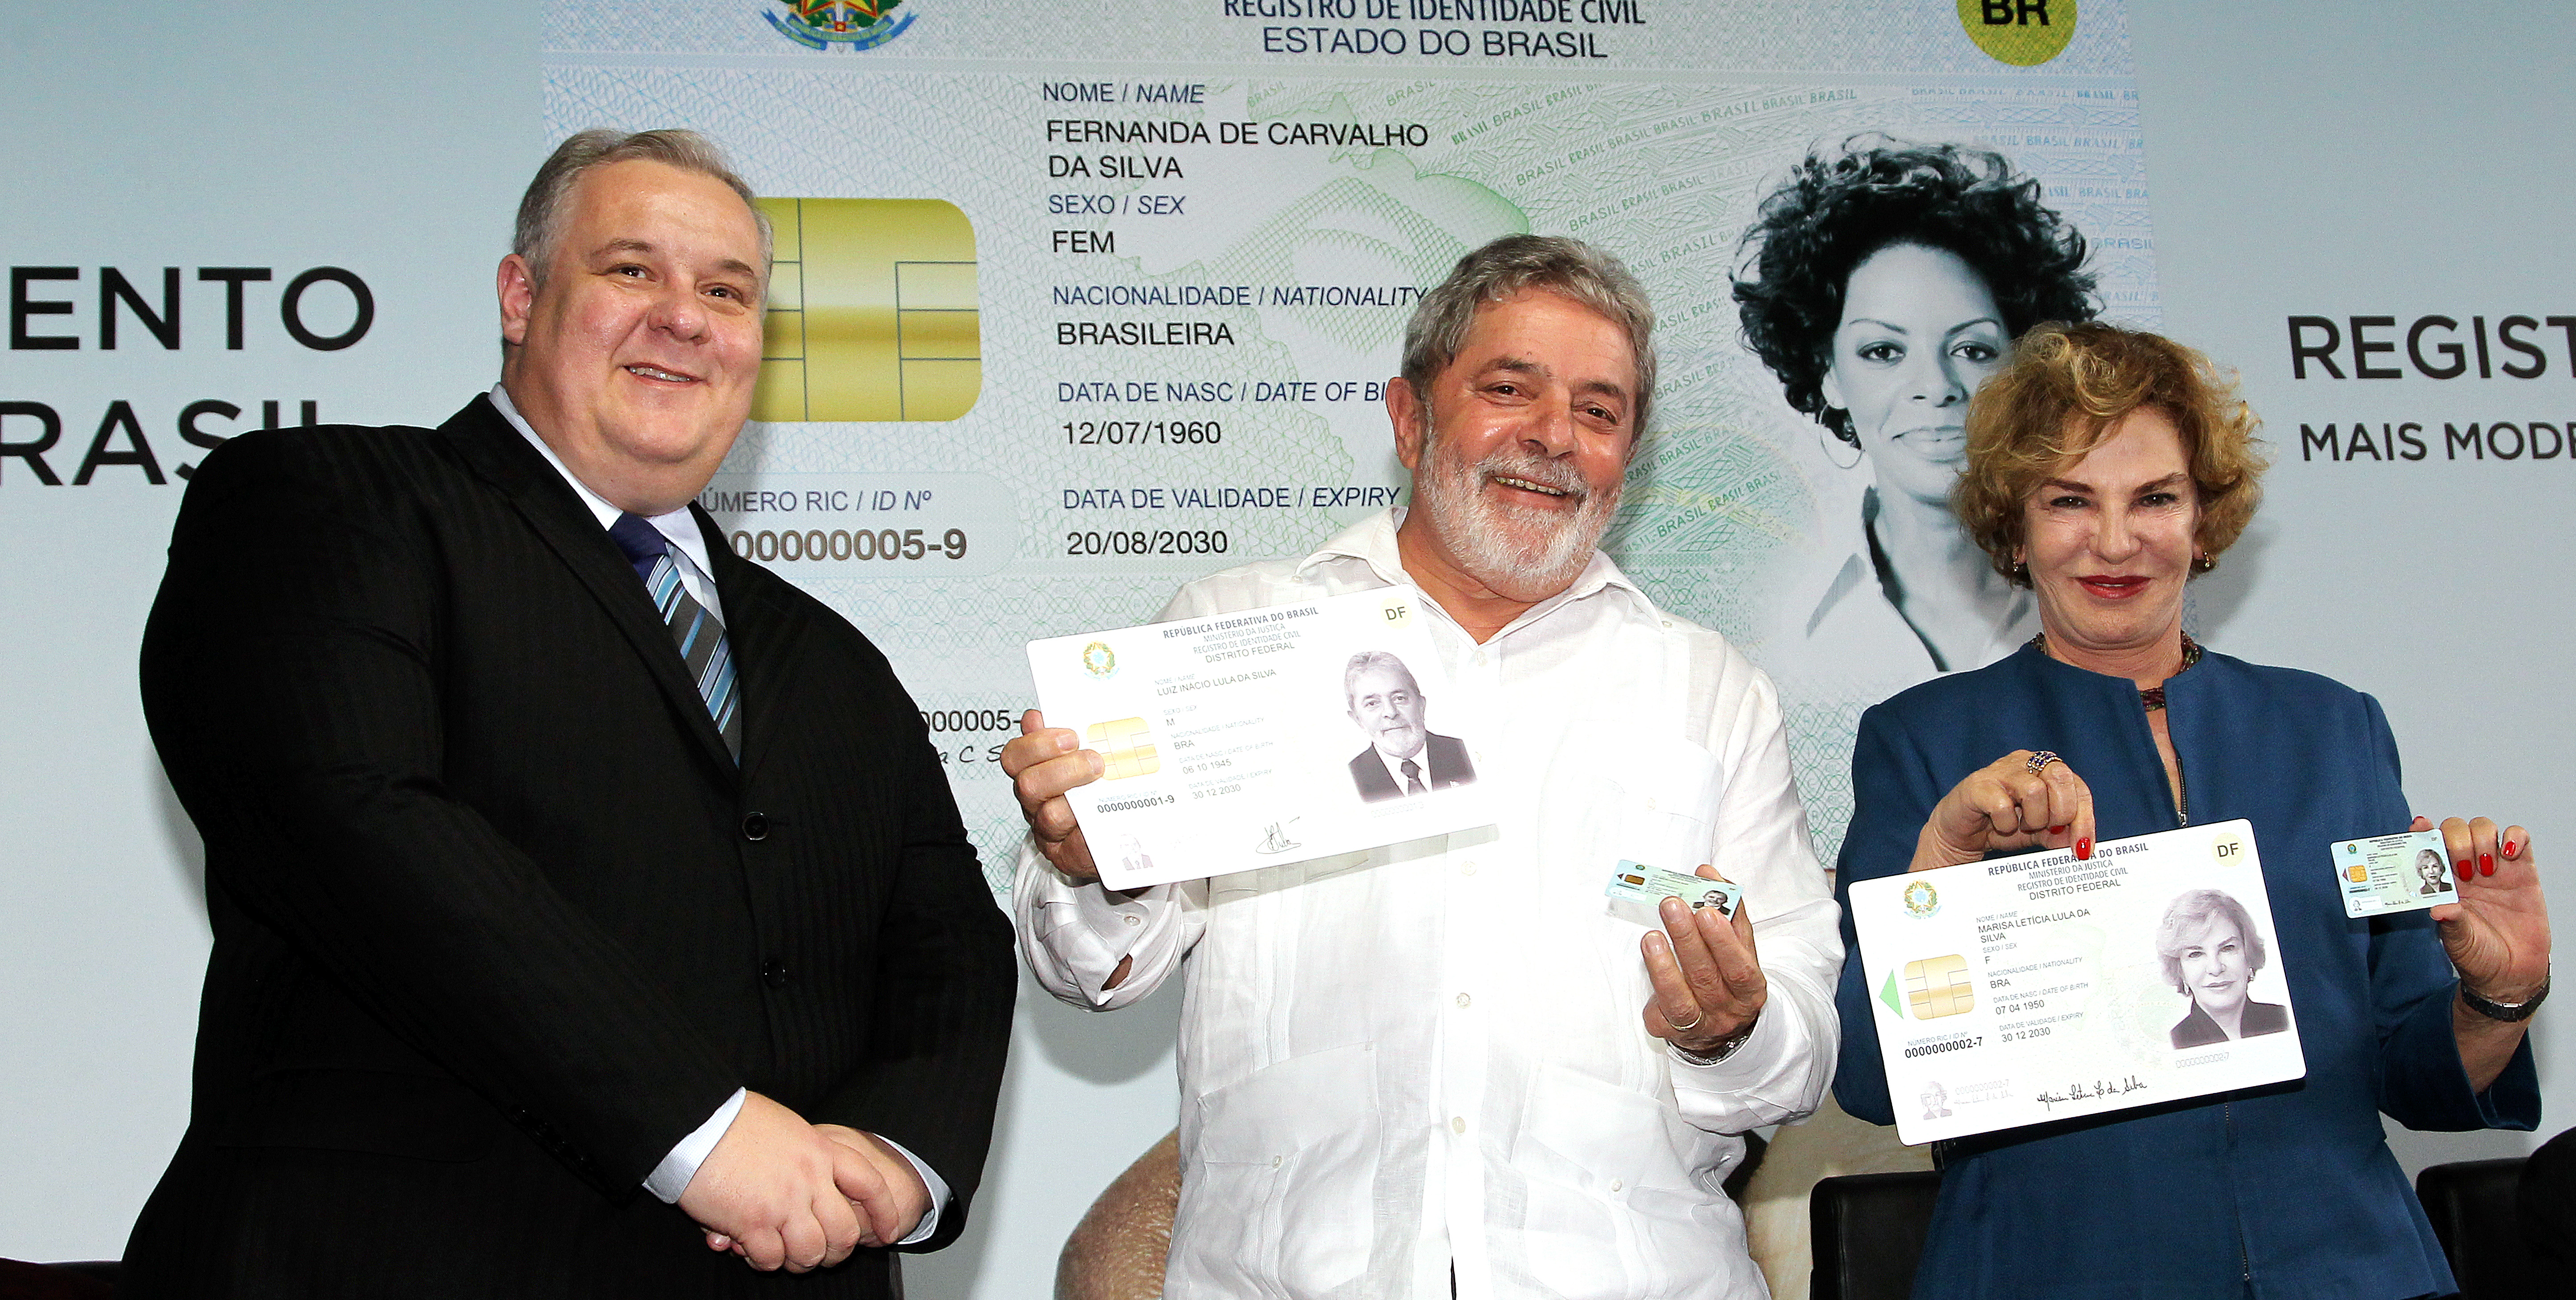 Presidente Lula, dona Marisa e o ministro da Justiça, Luiz Paulo Barreto, durante cerimônia de lançamento do novo Registro de Identidade Civil (RIC) e posse do Conselho Nacional de Segurança Pública